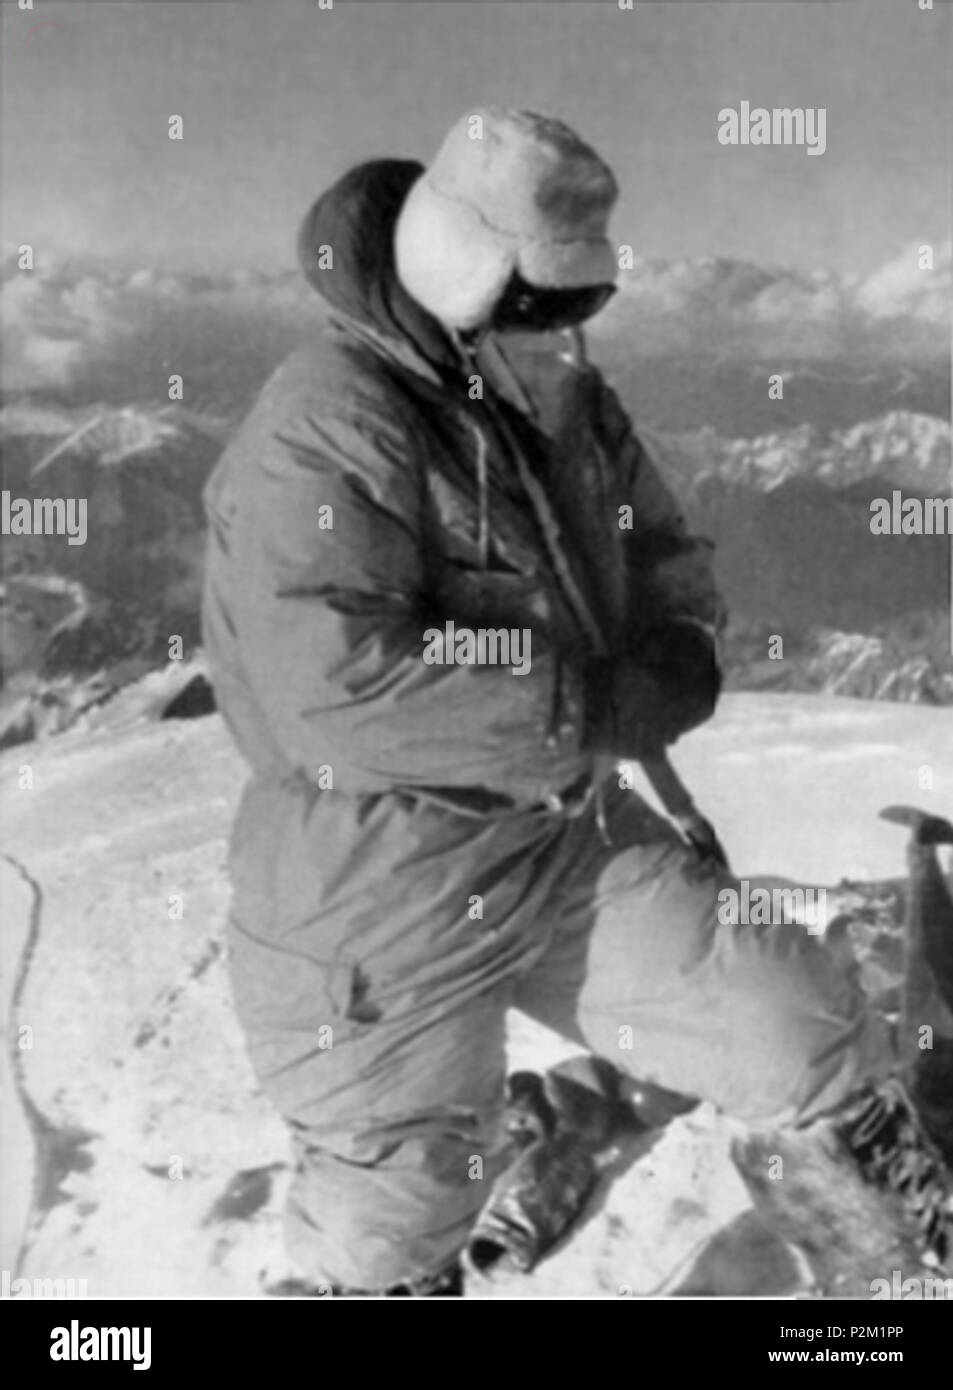 . English: Achille Compagnoni on the summit of K2, using oxigen mask. Italiano: Achille Compagnoni sulla vetta del K2, con la maschera d'ossigeno. 31 July 1954. Lino Lacedelli 19 Compagnoni summit K2 Stock Photo